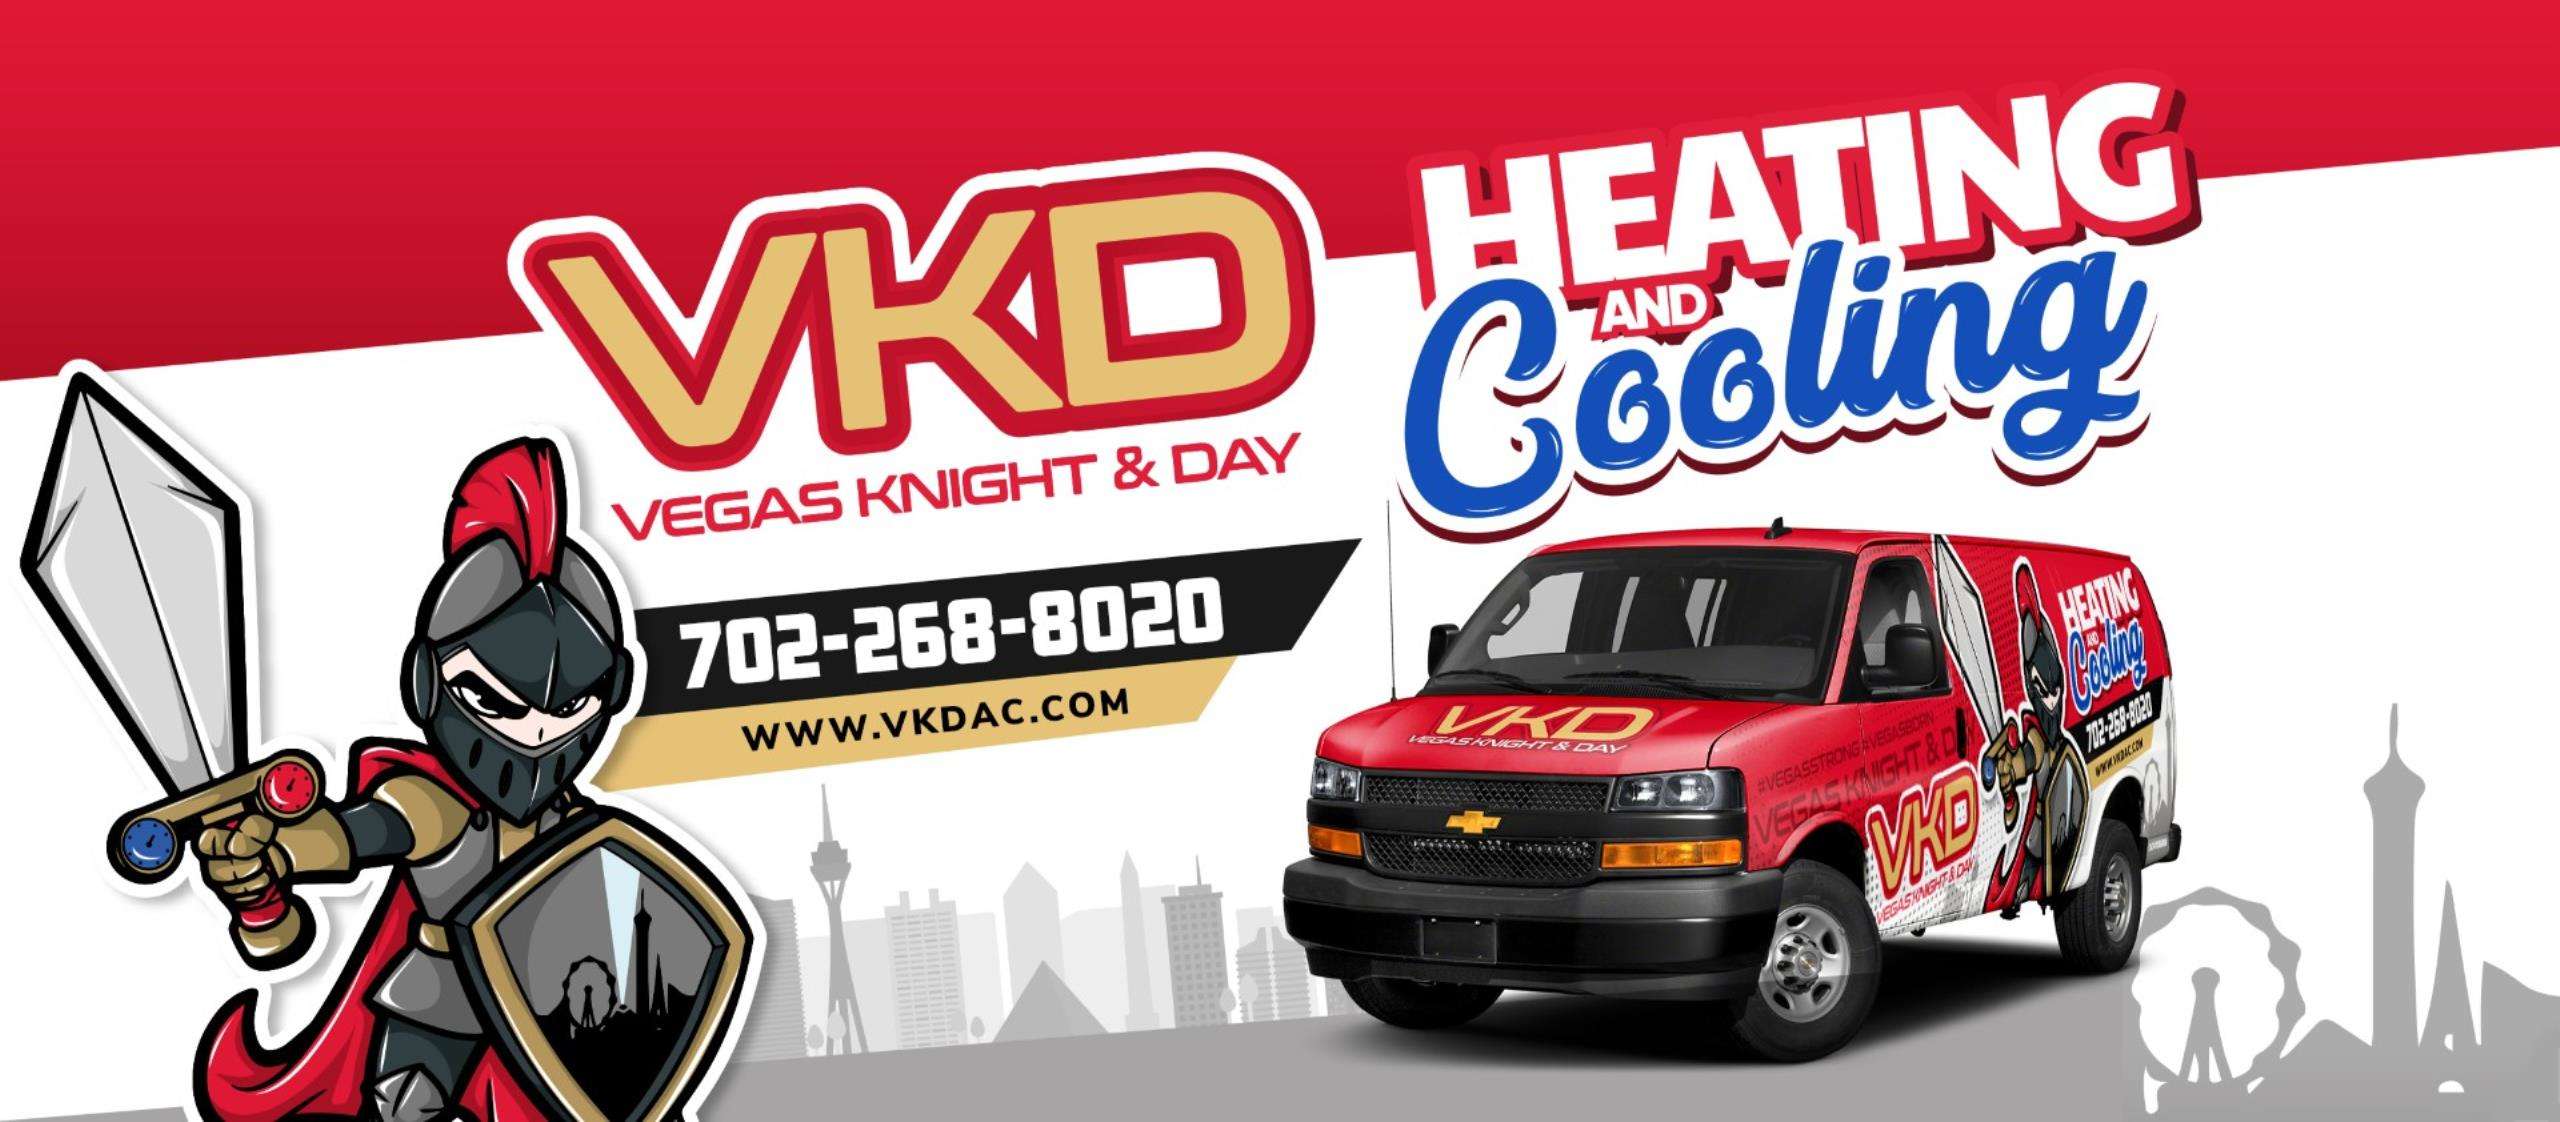 Vegas Knight & Day Heating & Cooling, LLC Logo